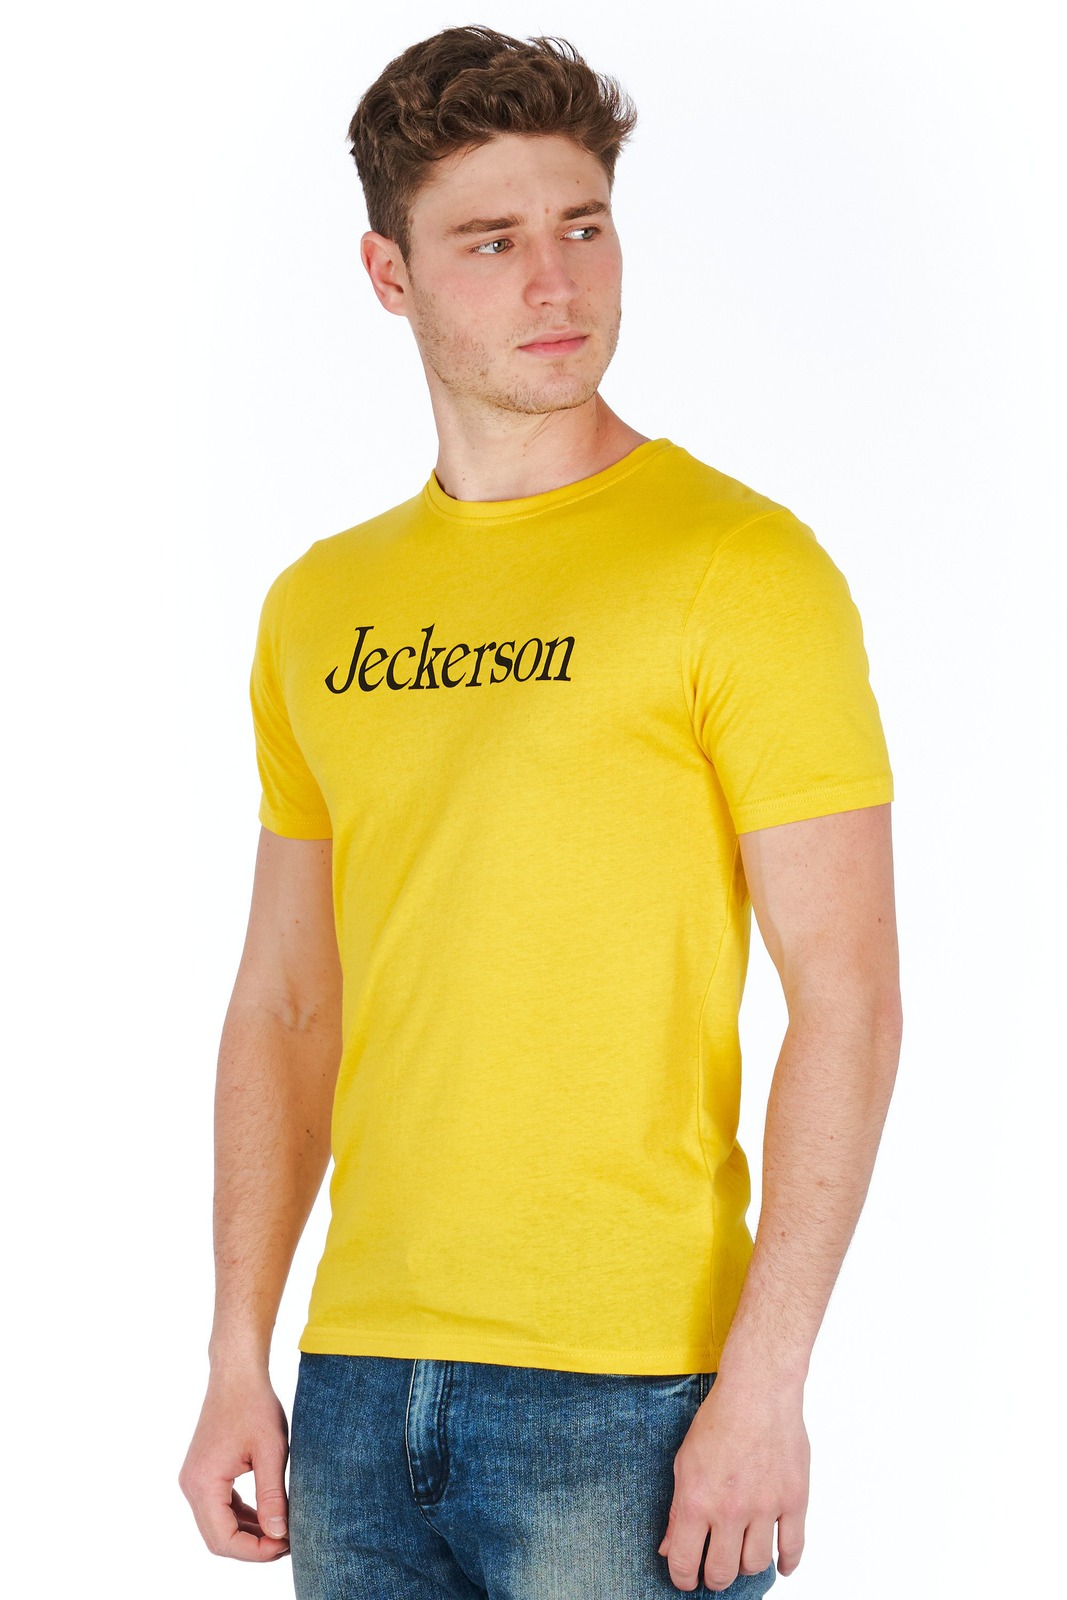 Jeckerson Gelbe T-Shirts für Herren - KLASSISCH